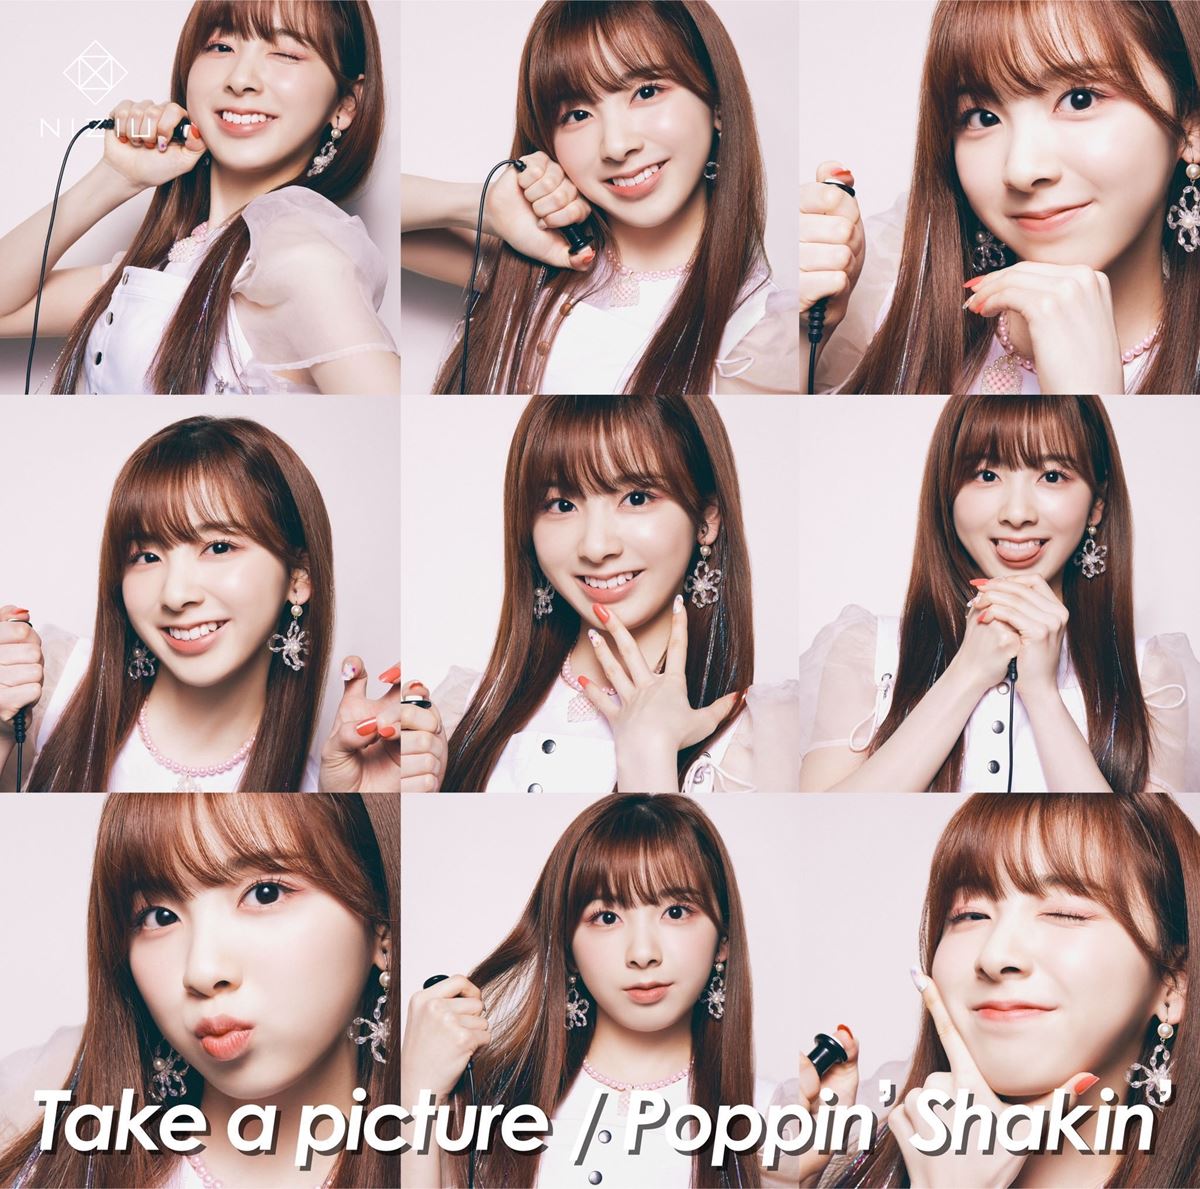 『Take a picture／Poppin’ Shakin’』MIIHI盤ジャケット